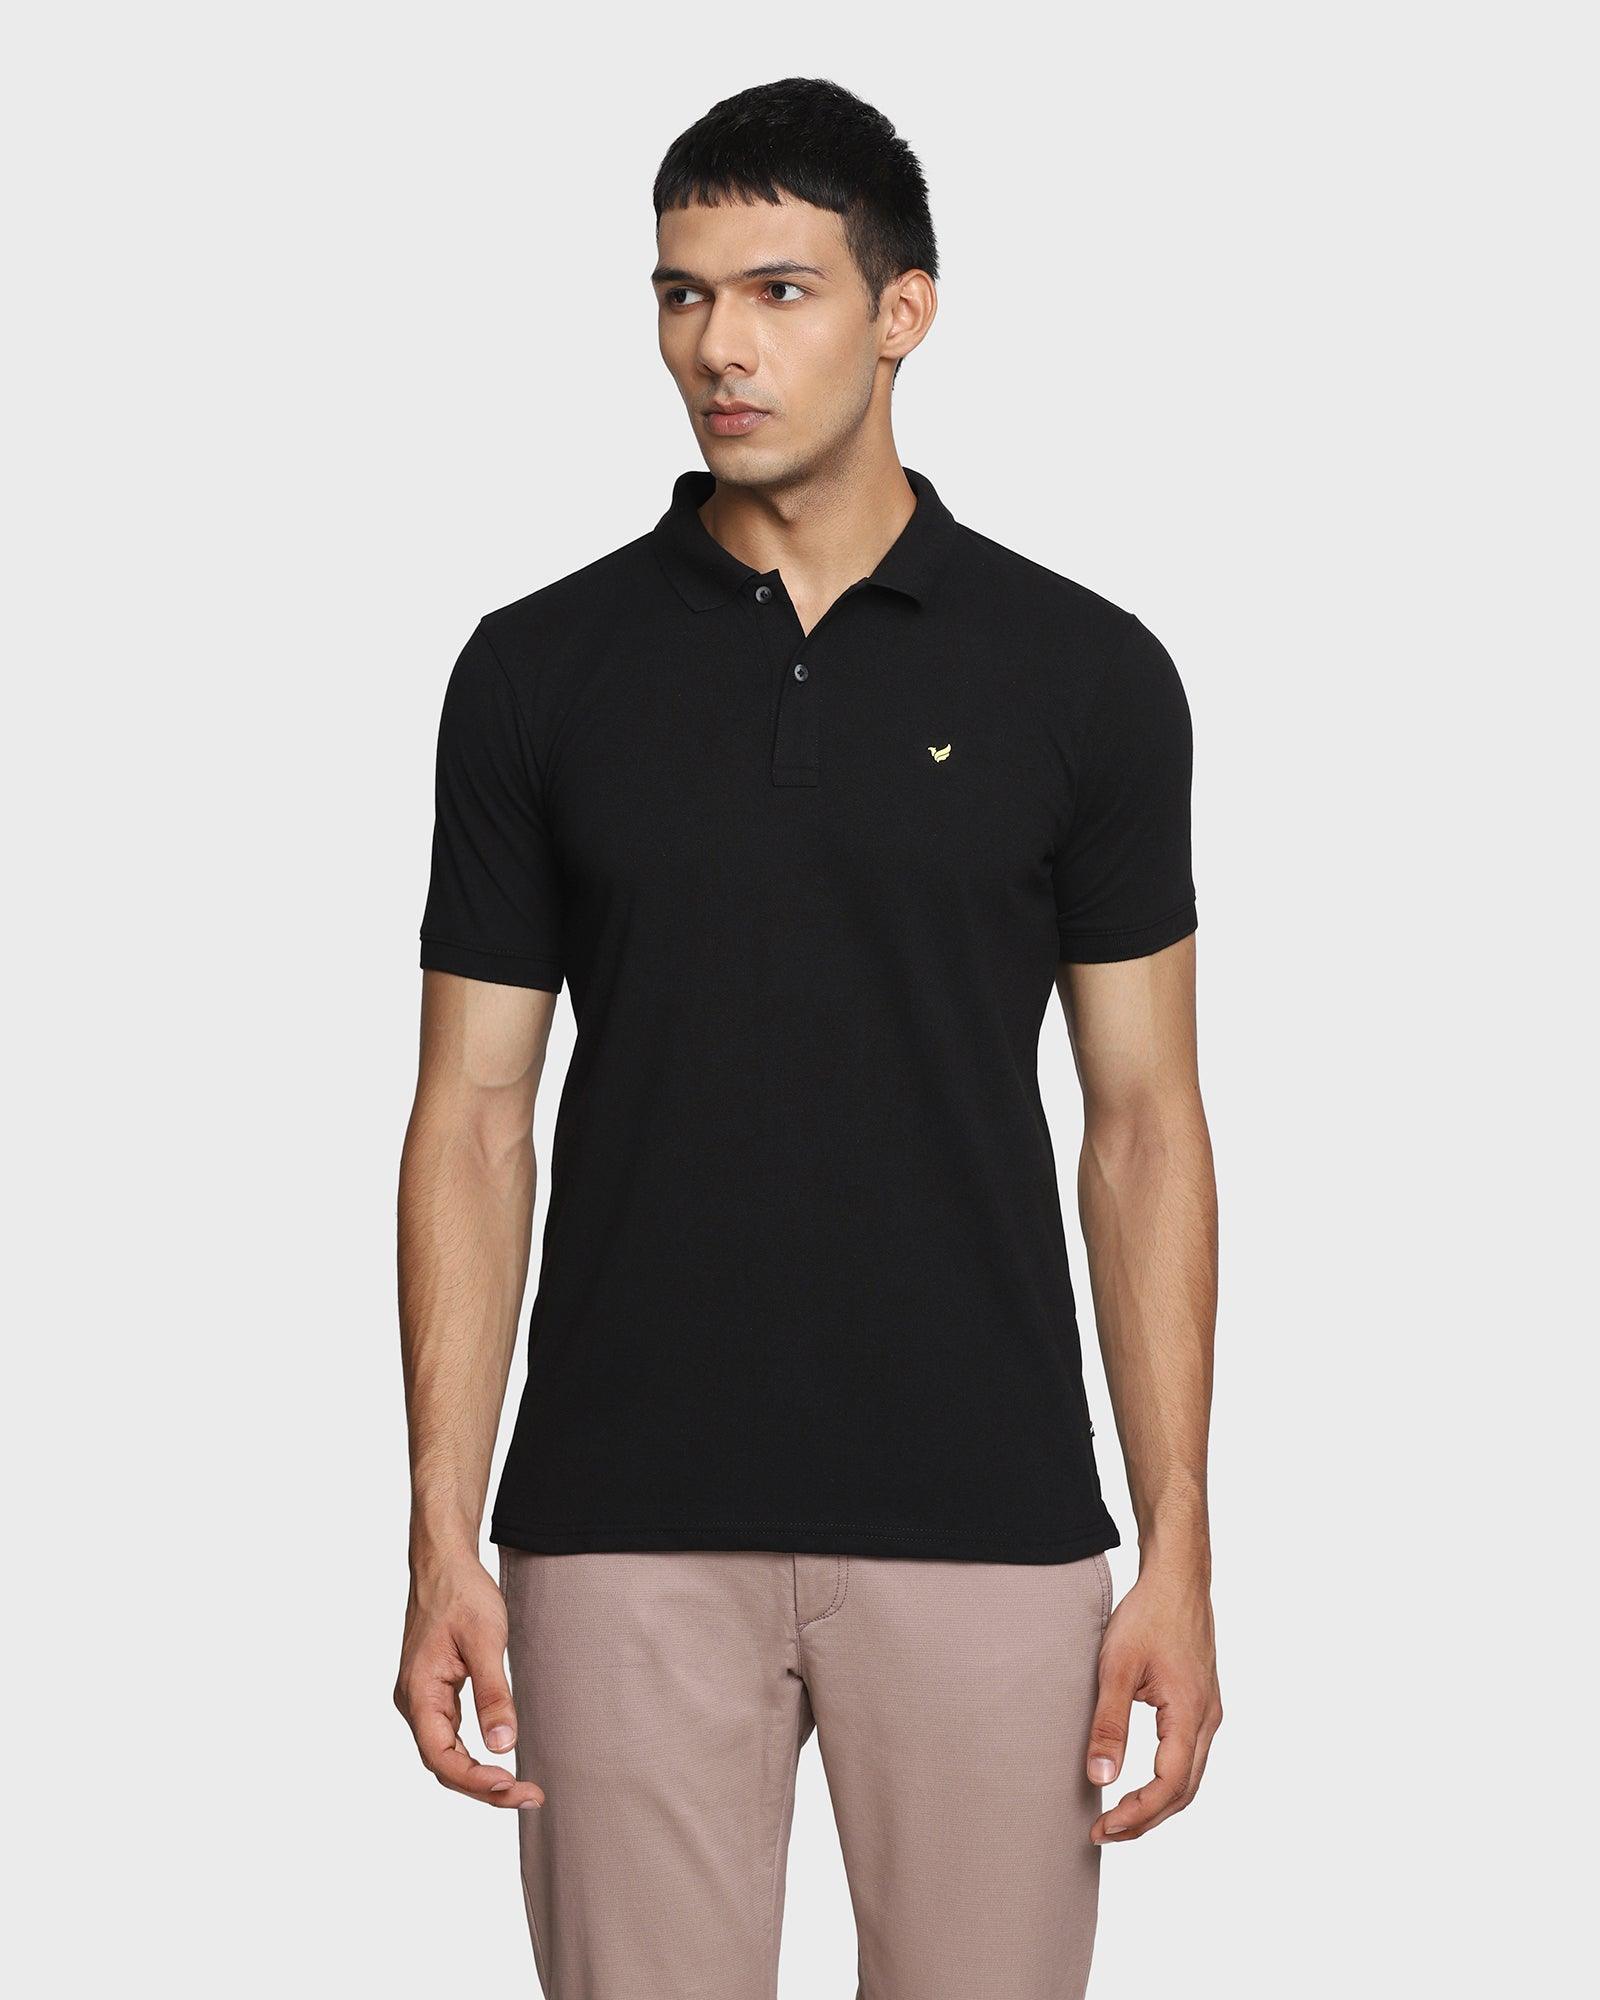 Polo Black Solid T Shirt - Romeo